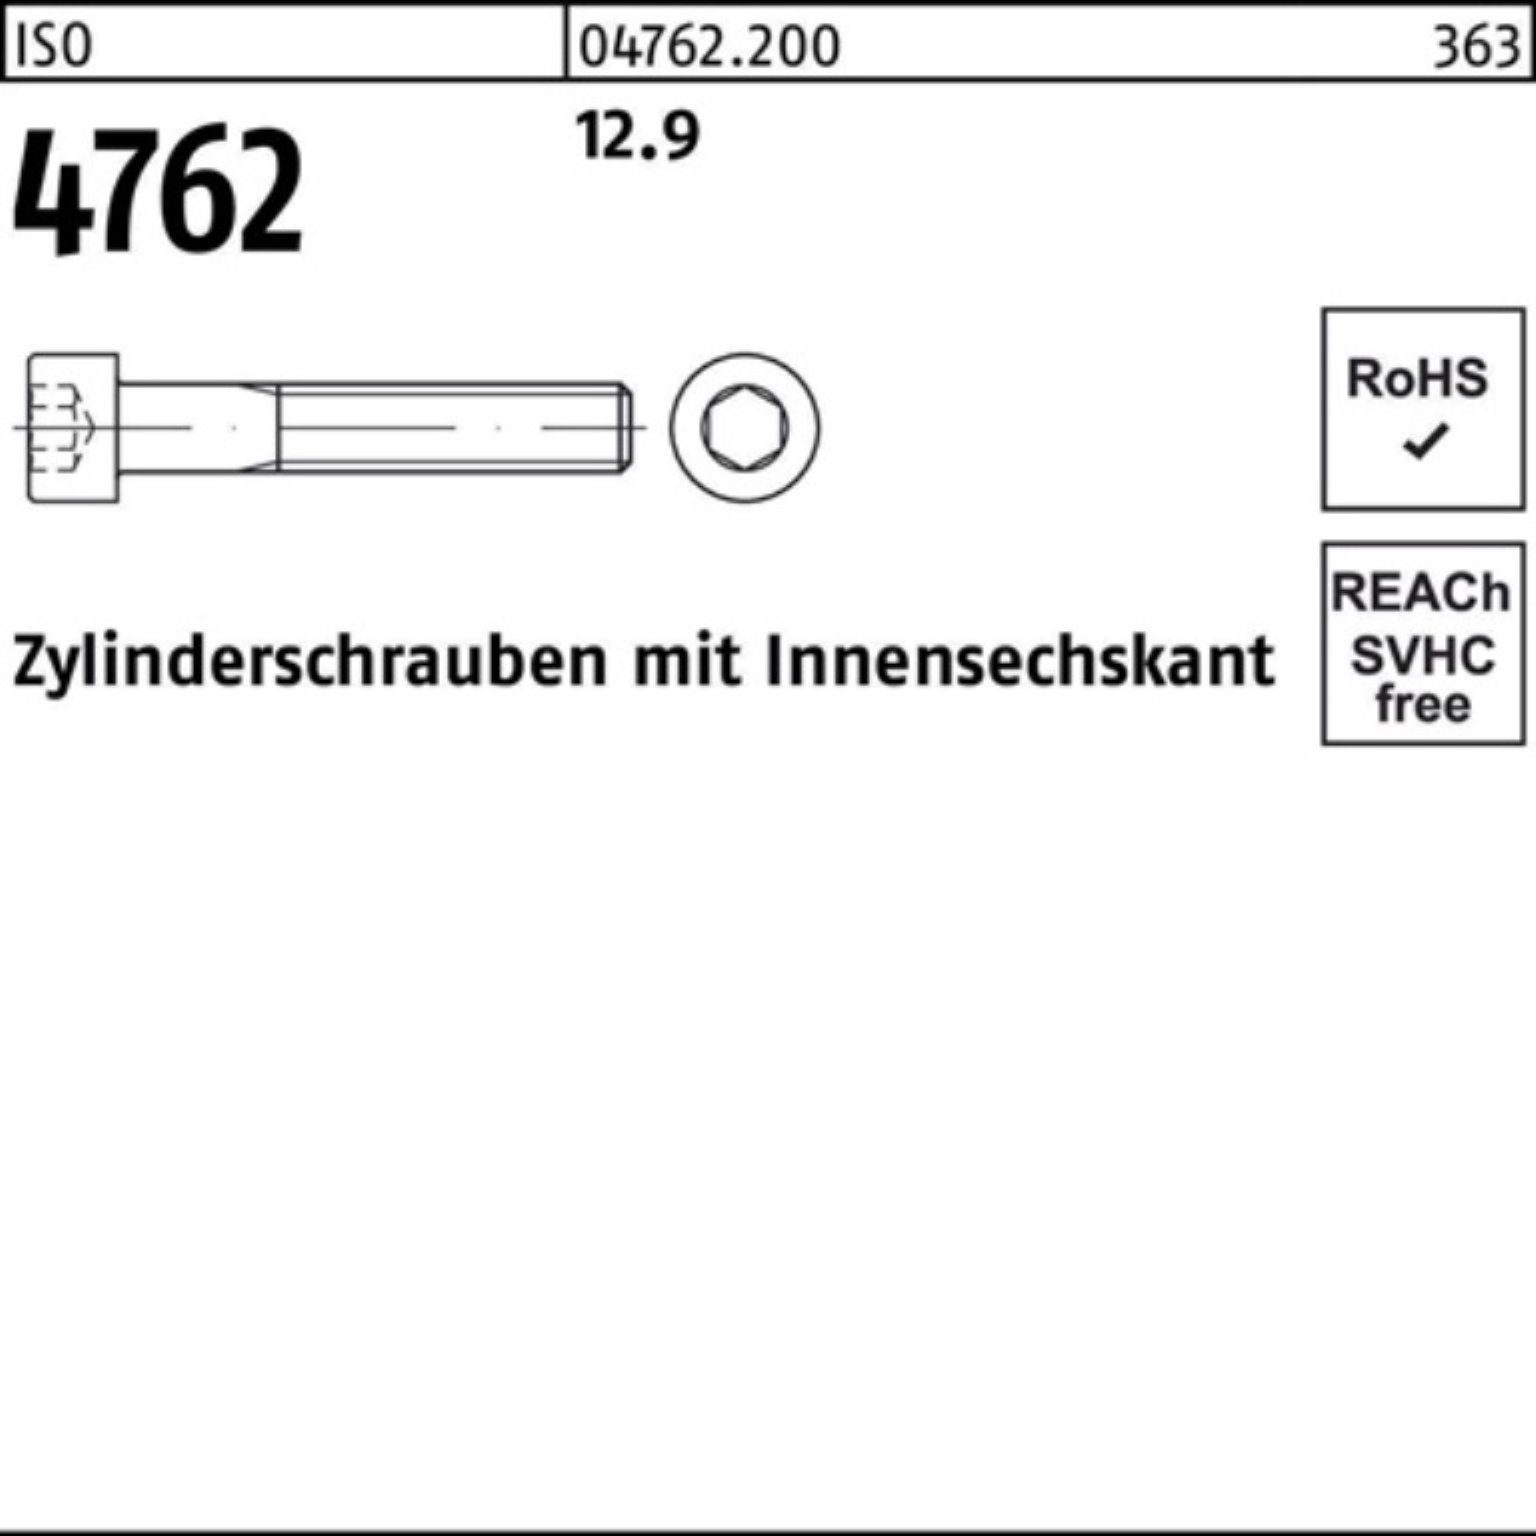 M4x 12.9 100 Reyher Pack 4762 100er Zylinderschraube Zylinderschraube Stück 25 ISO Innen-6kt